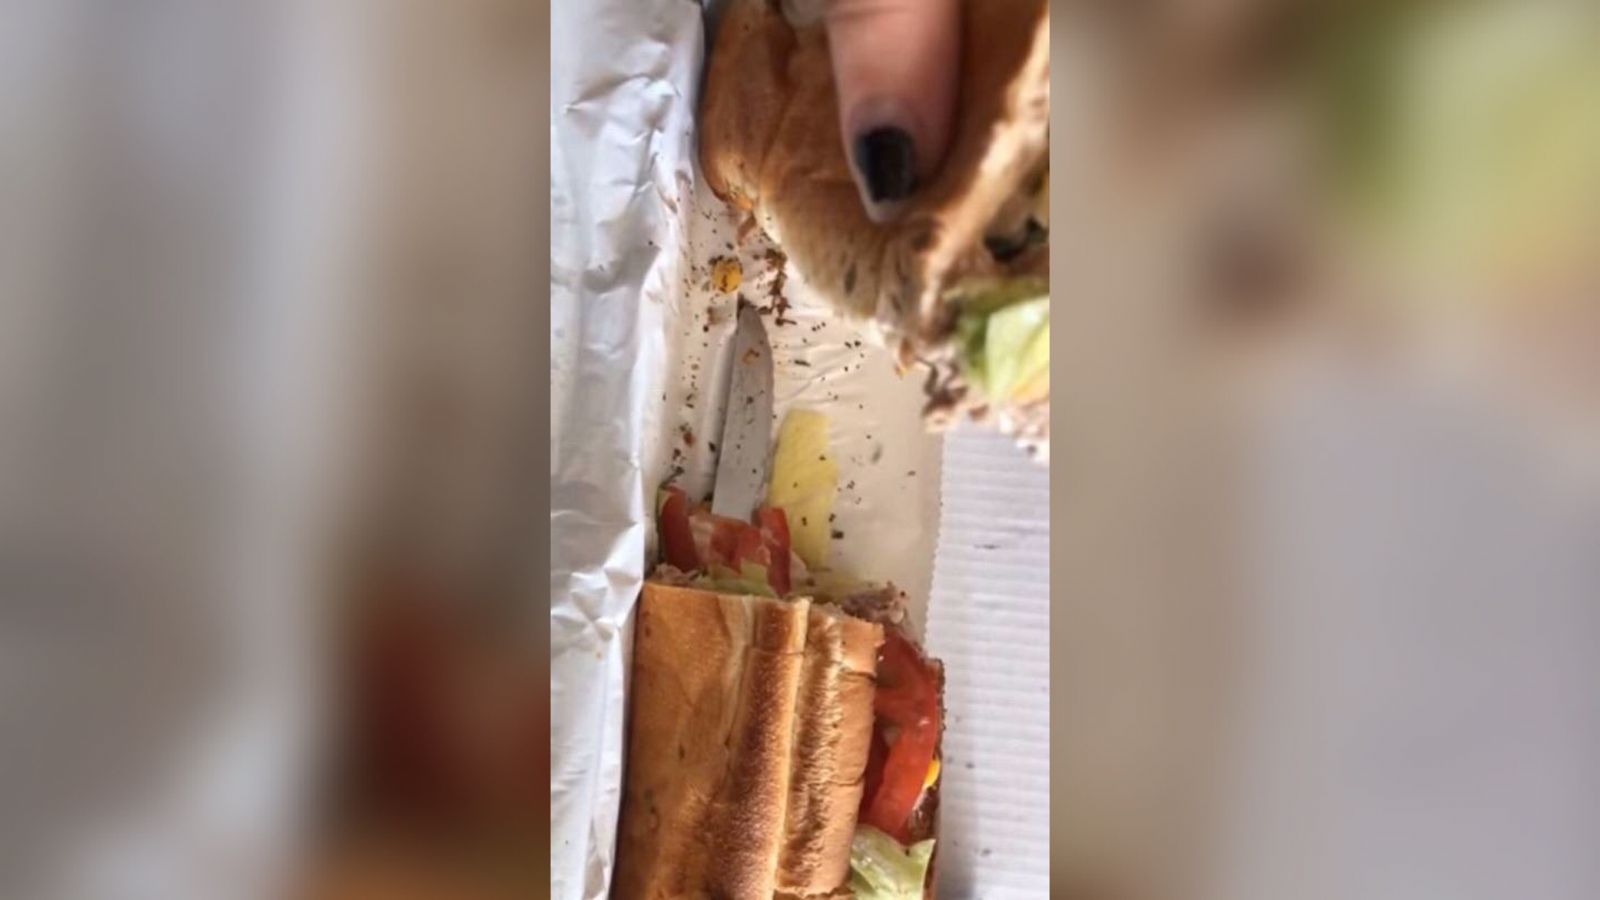 Mulher acha faca dentro de sanduíche de rede de fast food (Foto: Reprodução - Redes sociais)